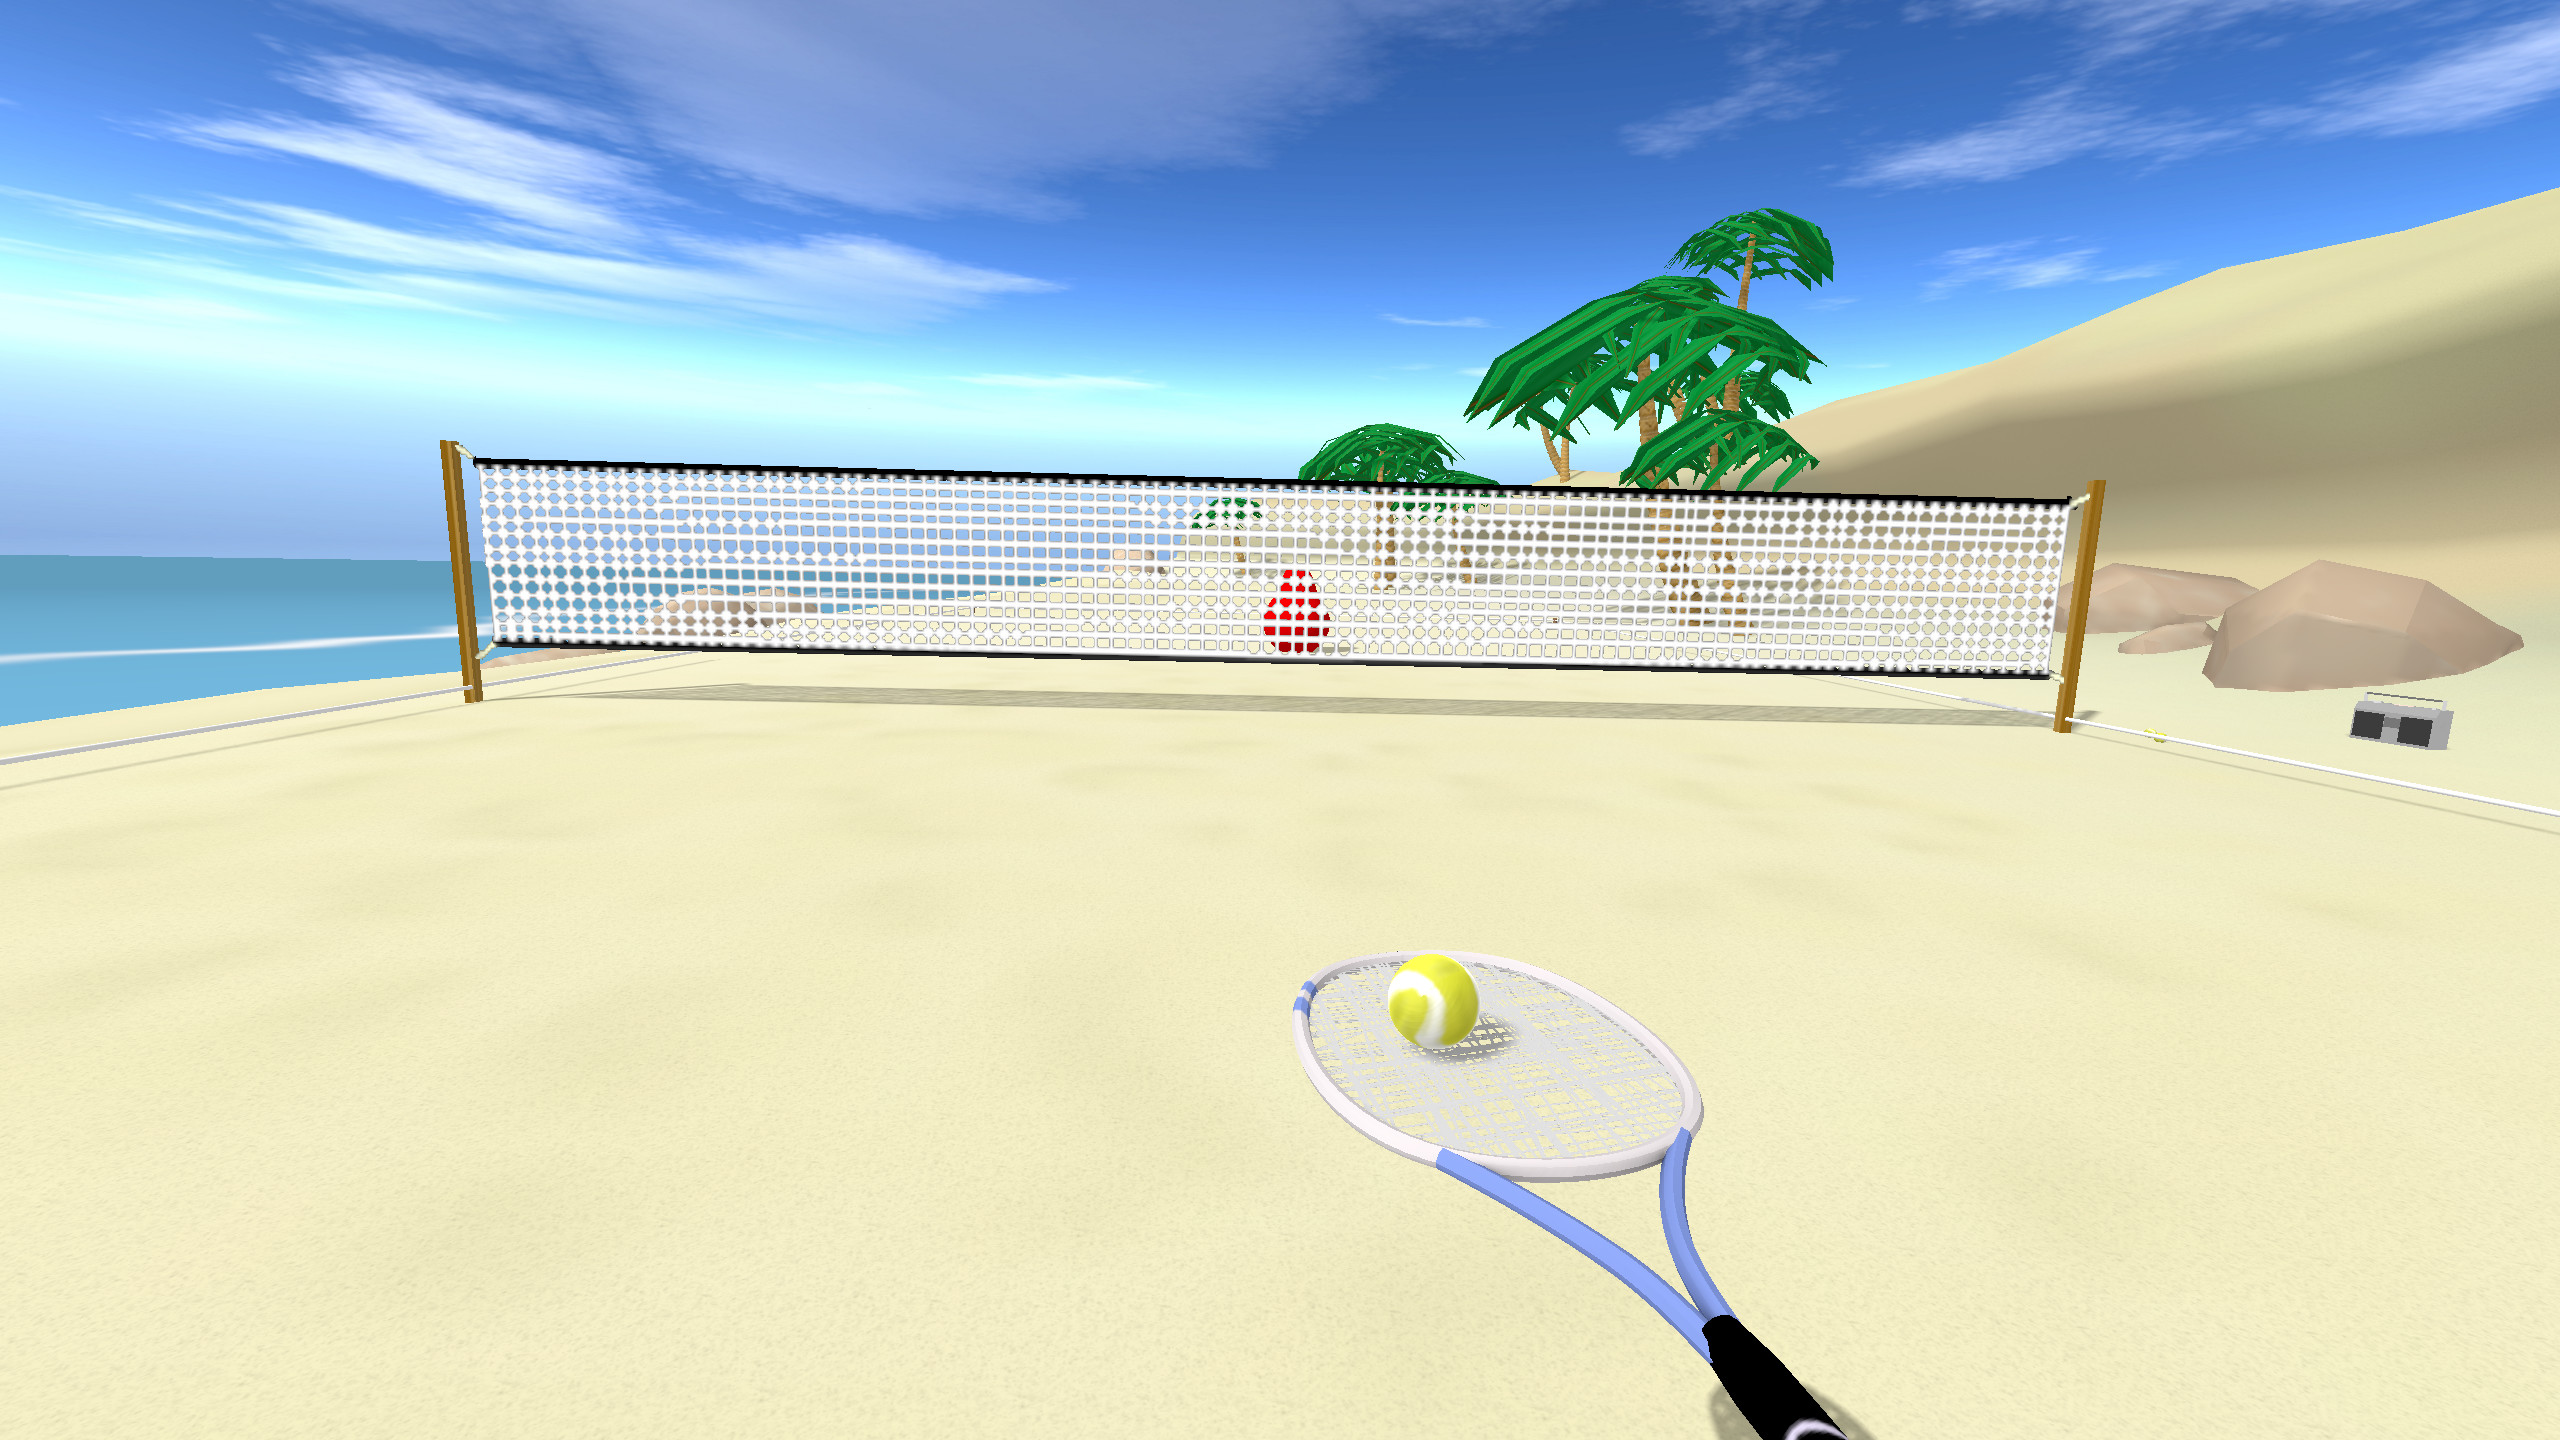 Игры с теннисными шариками. Tennis игра. Игра теннис ВР. Игра на пляже с ракетками и мячом. Теннис фон.